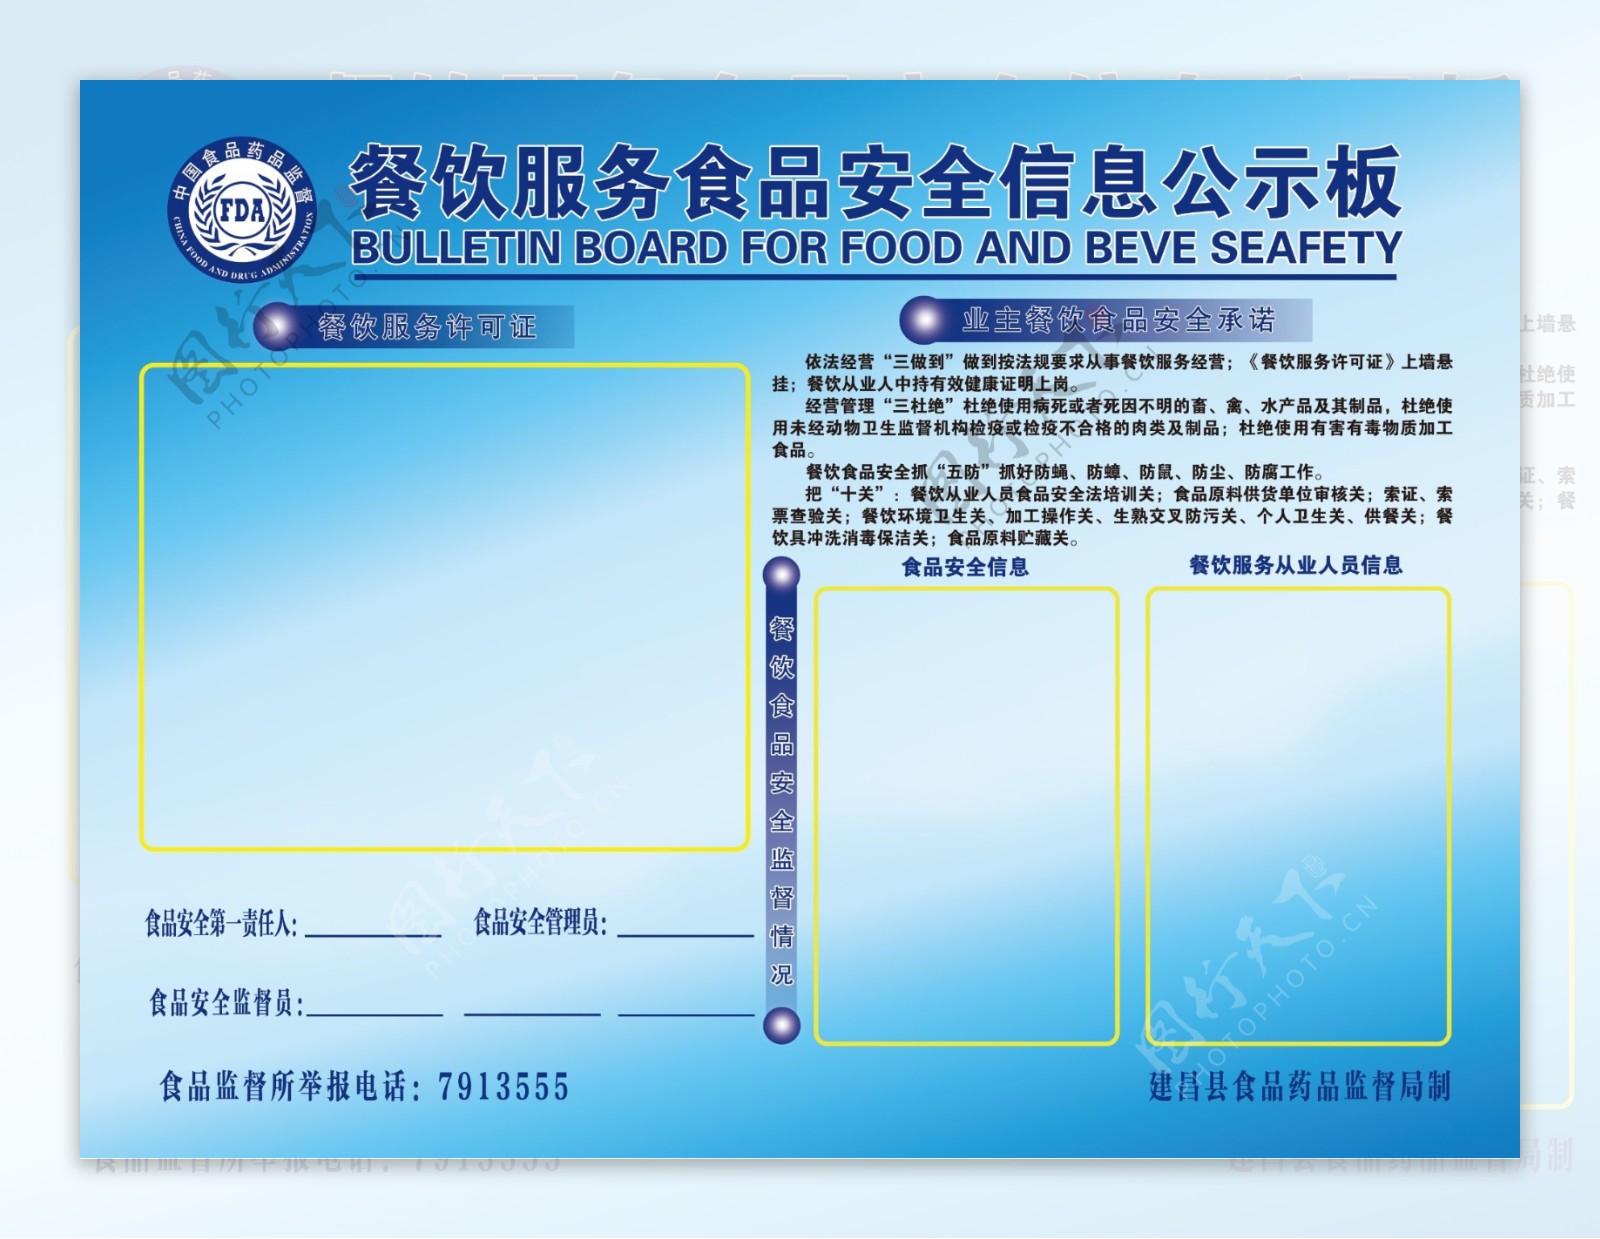 餐饮服务食品安全信息公示板